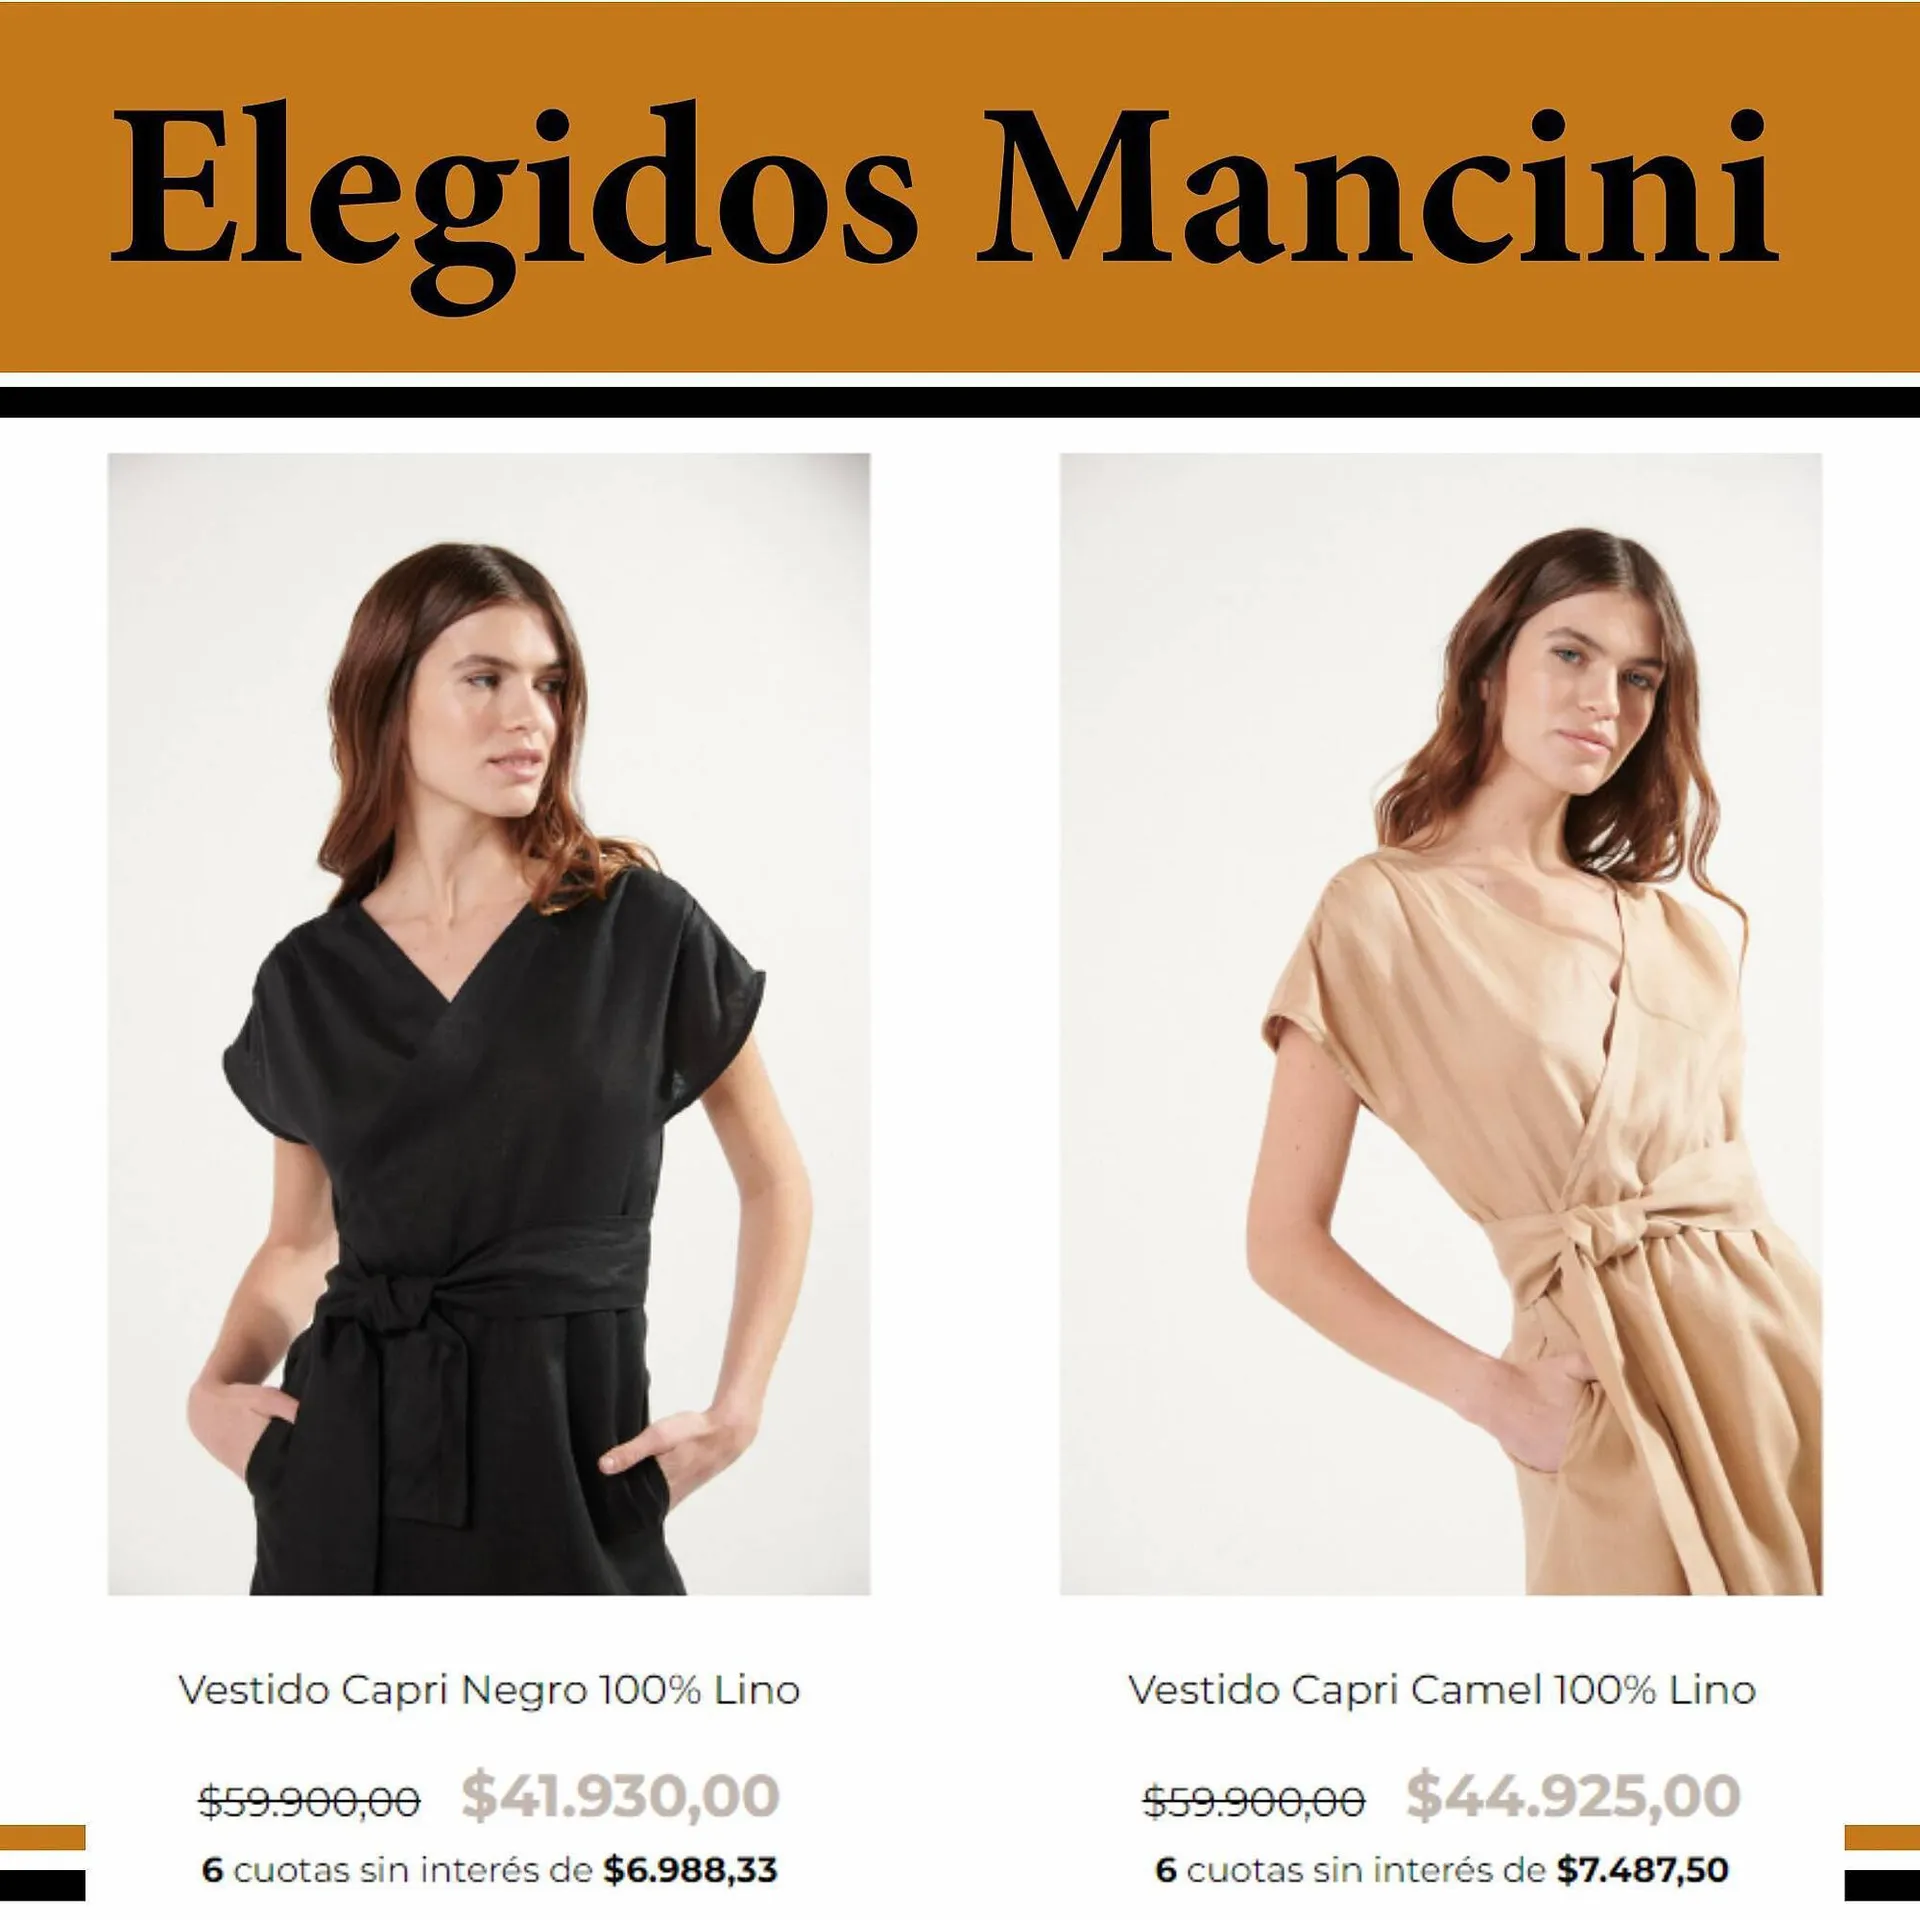 Catálogo Mancini - 2